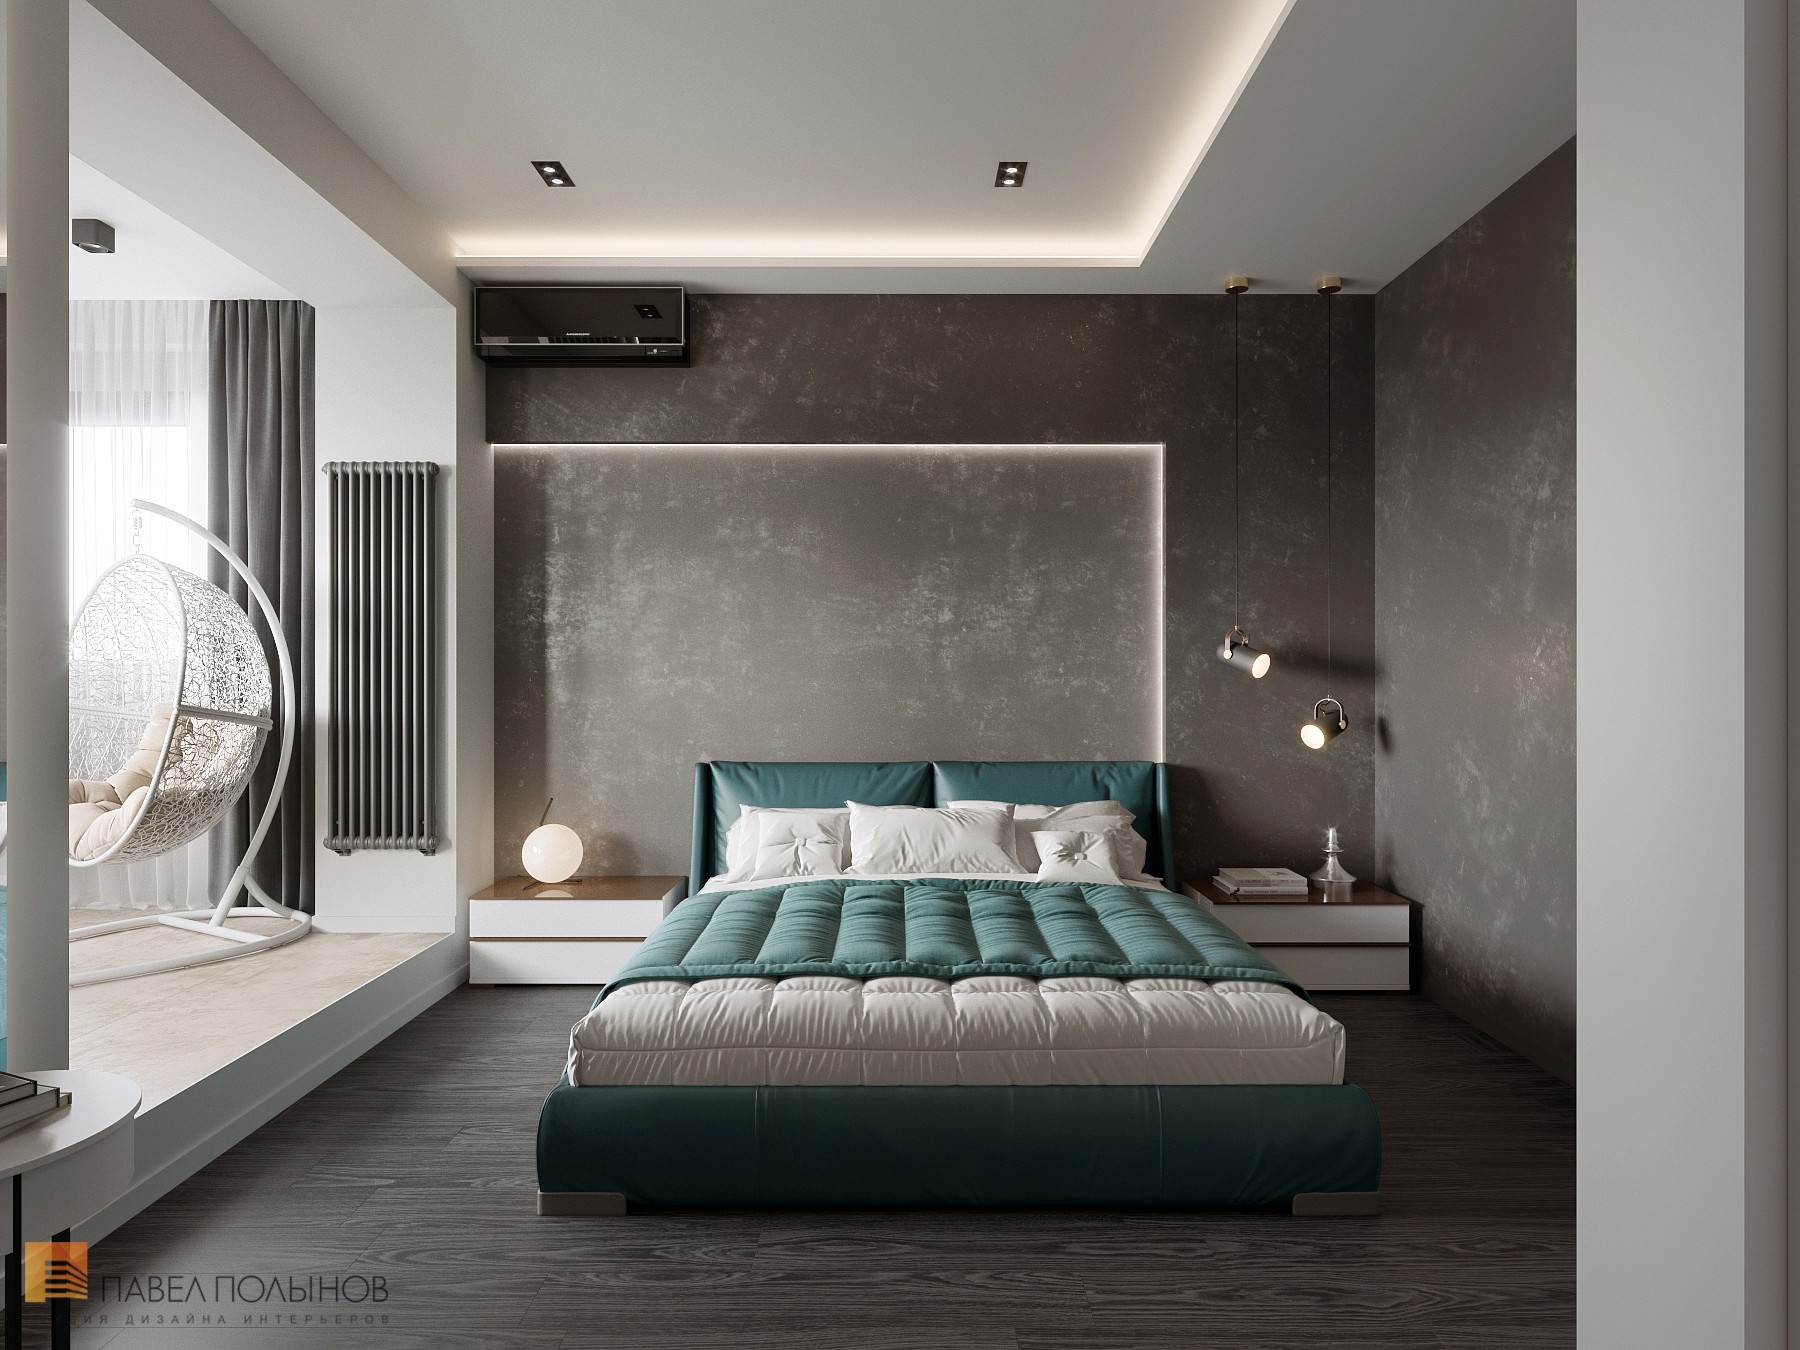 Фото дизайн спальни из проекта «Интерьер квартиры в ЖК Duderhof Club, современный стиль, 136 кв.м.»